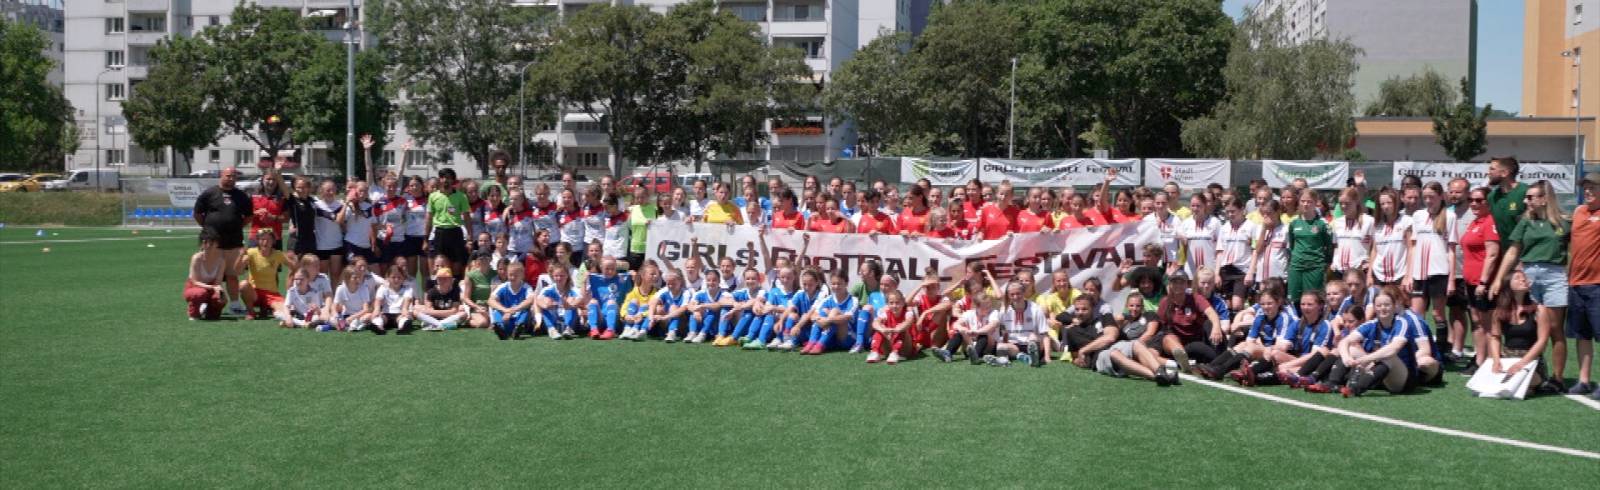 Mädchenteam der Vienna feiert Turniersieg